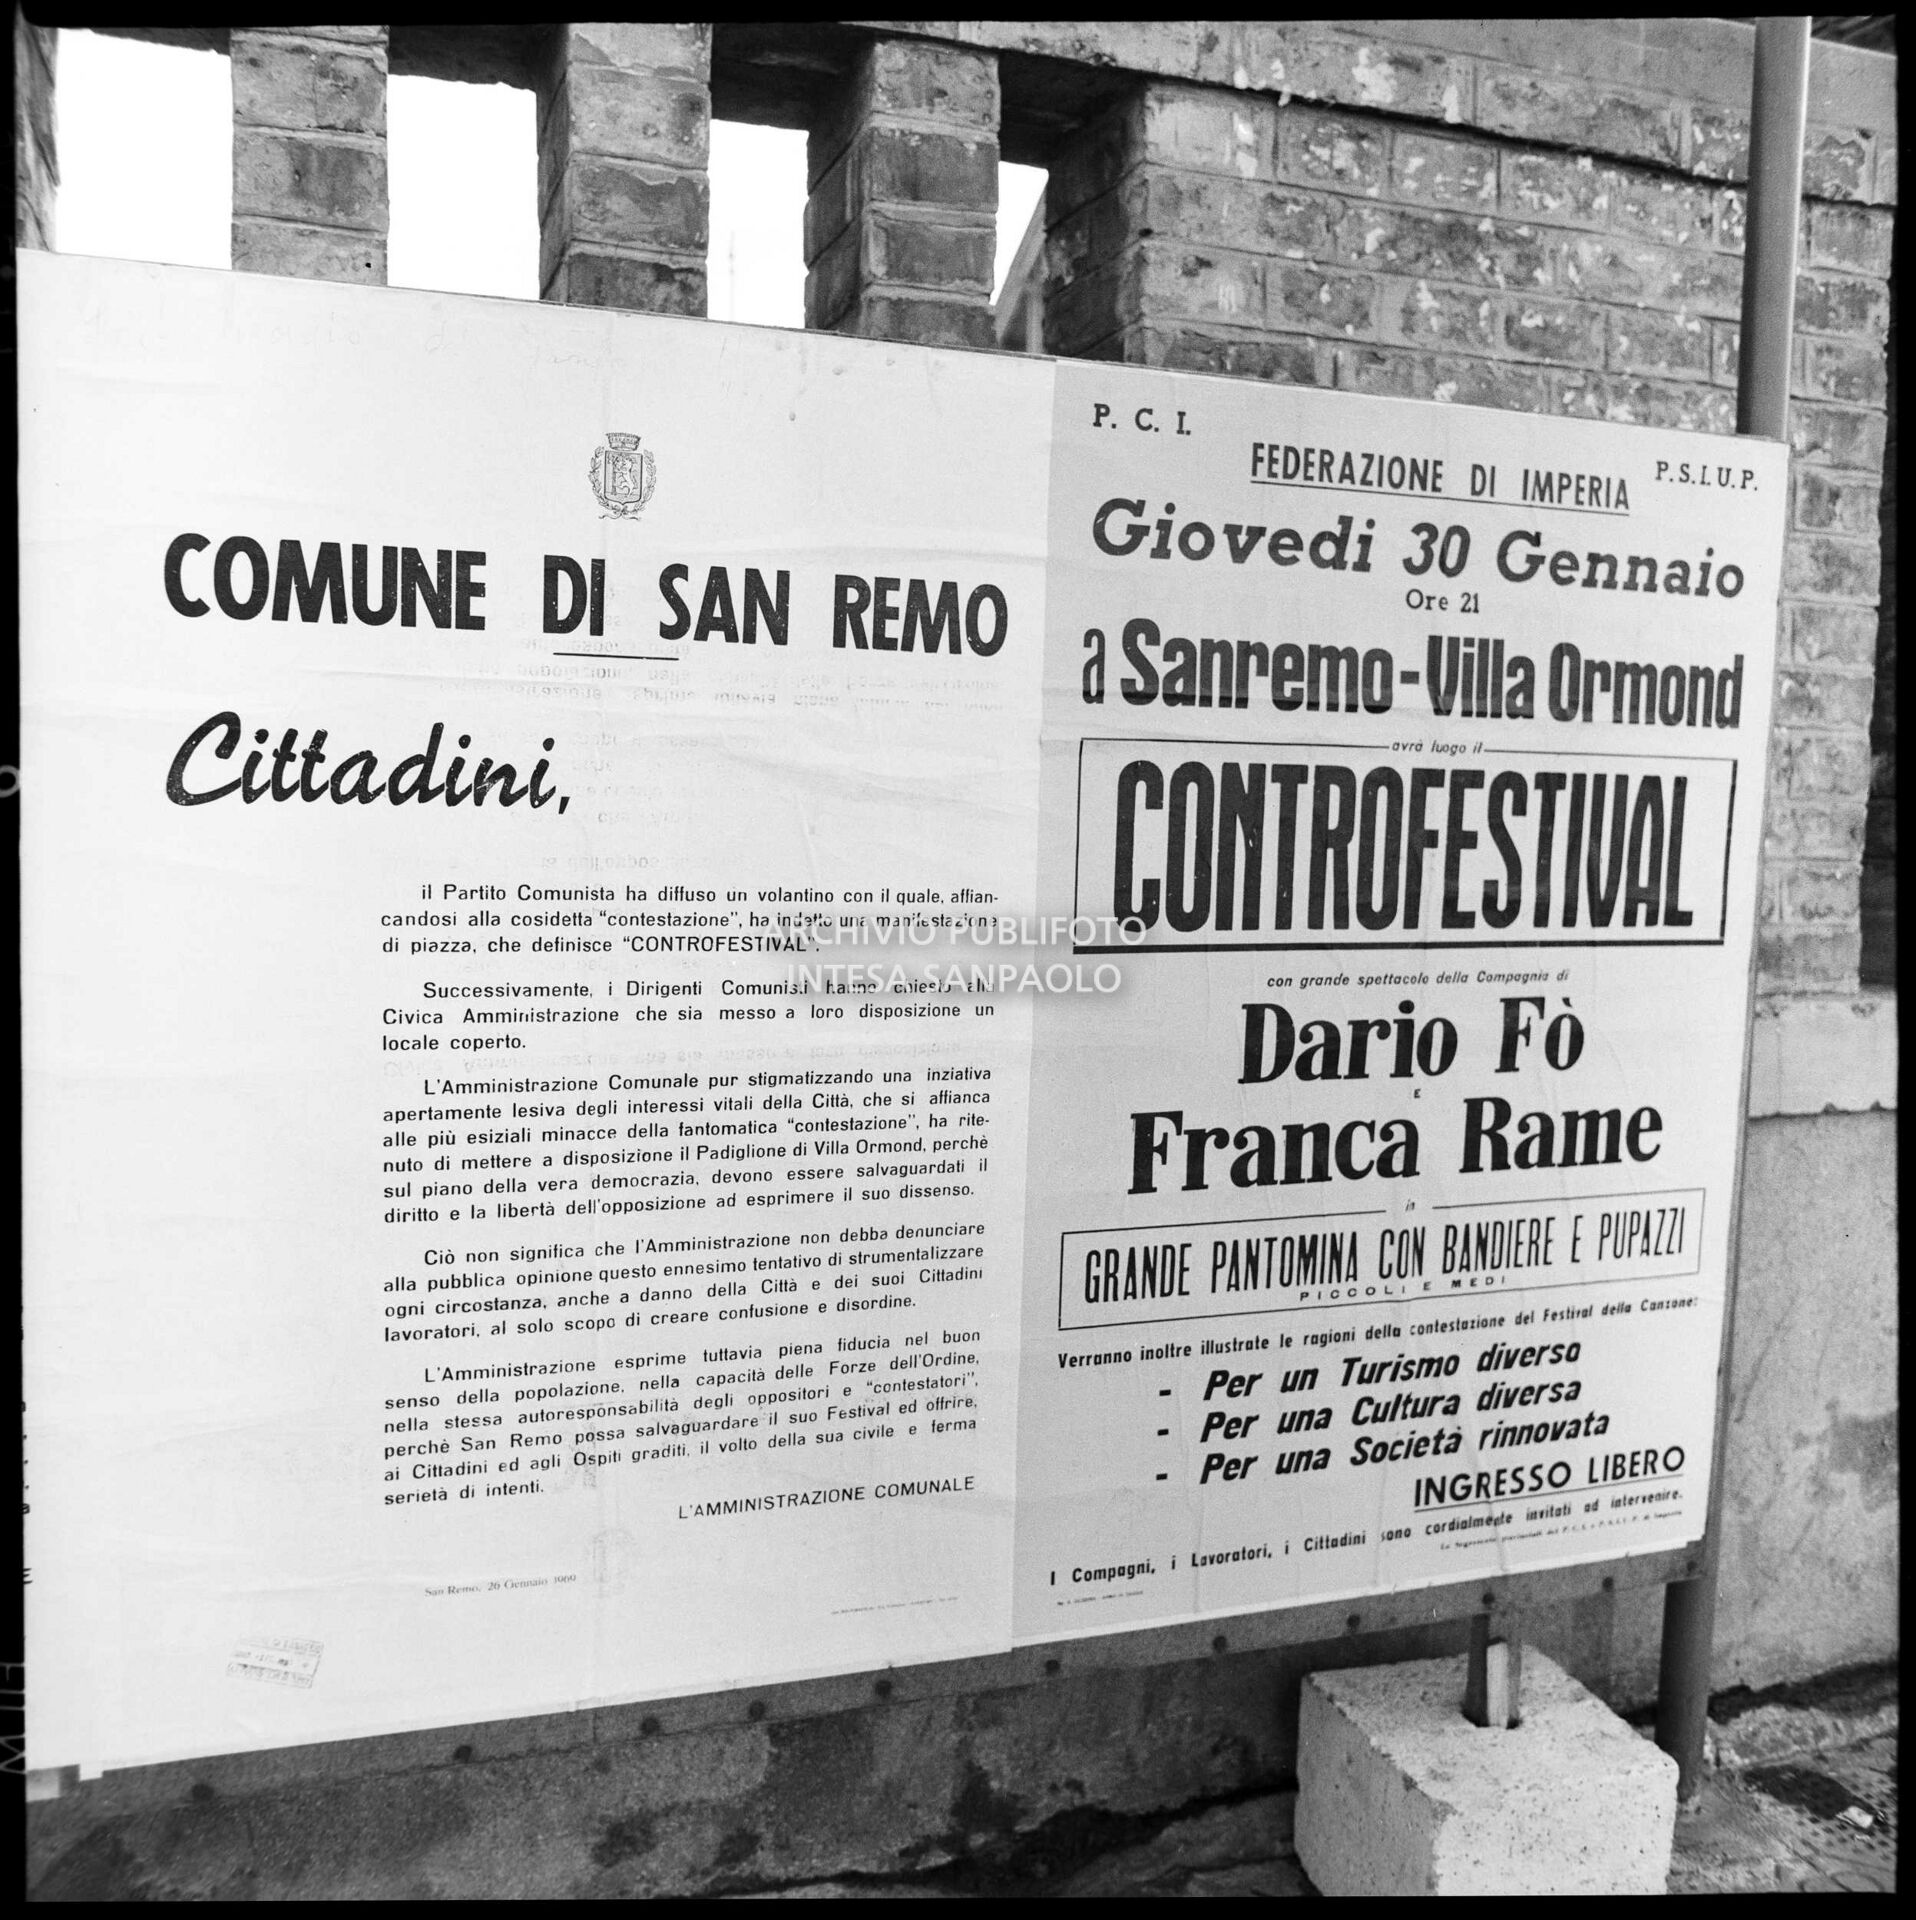 Il manifesto del Comune di Sanremo nel quale si comunica che l'Amministrazione ha concesso uno spazio per svolgere il Controfestival di Dario Fo e Franca Rame, in concomitanza con il XIX Festival di Sanremo; a destra il manifesto che promuove il Controfestival